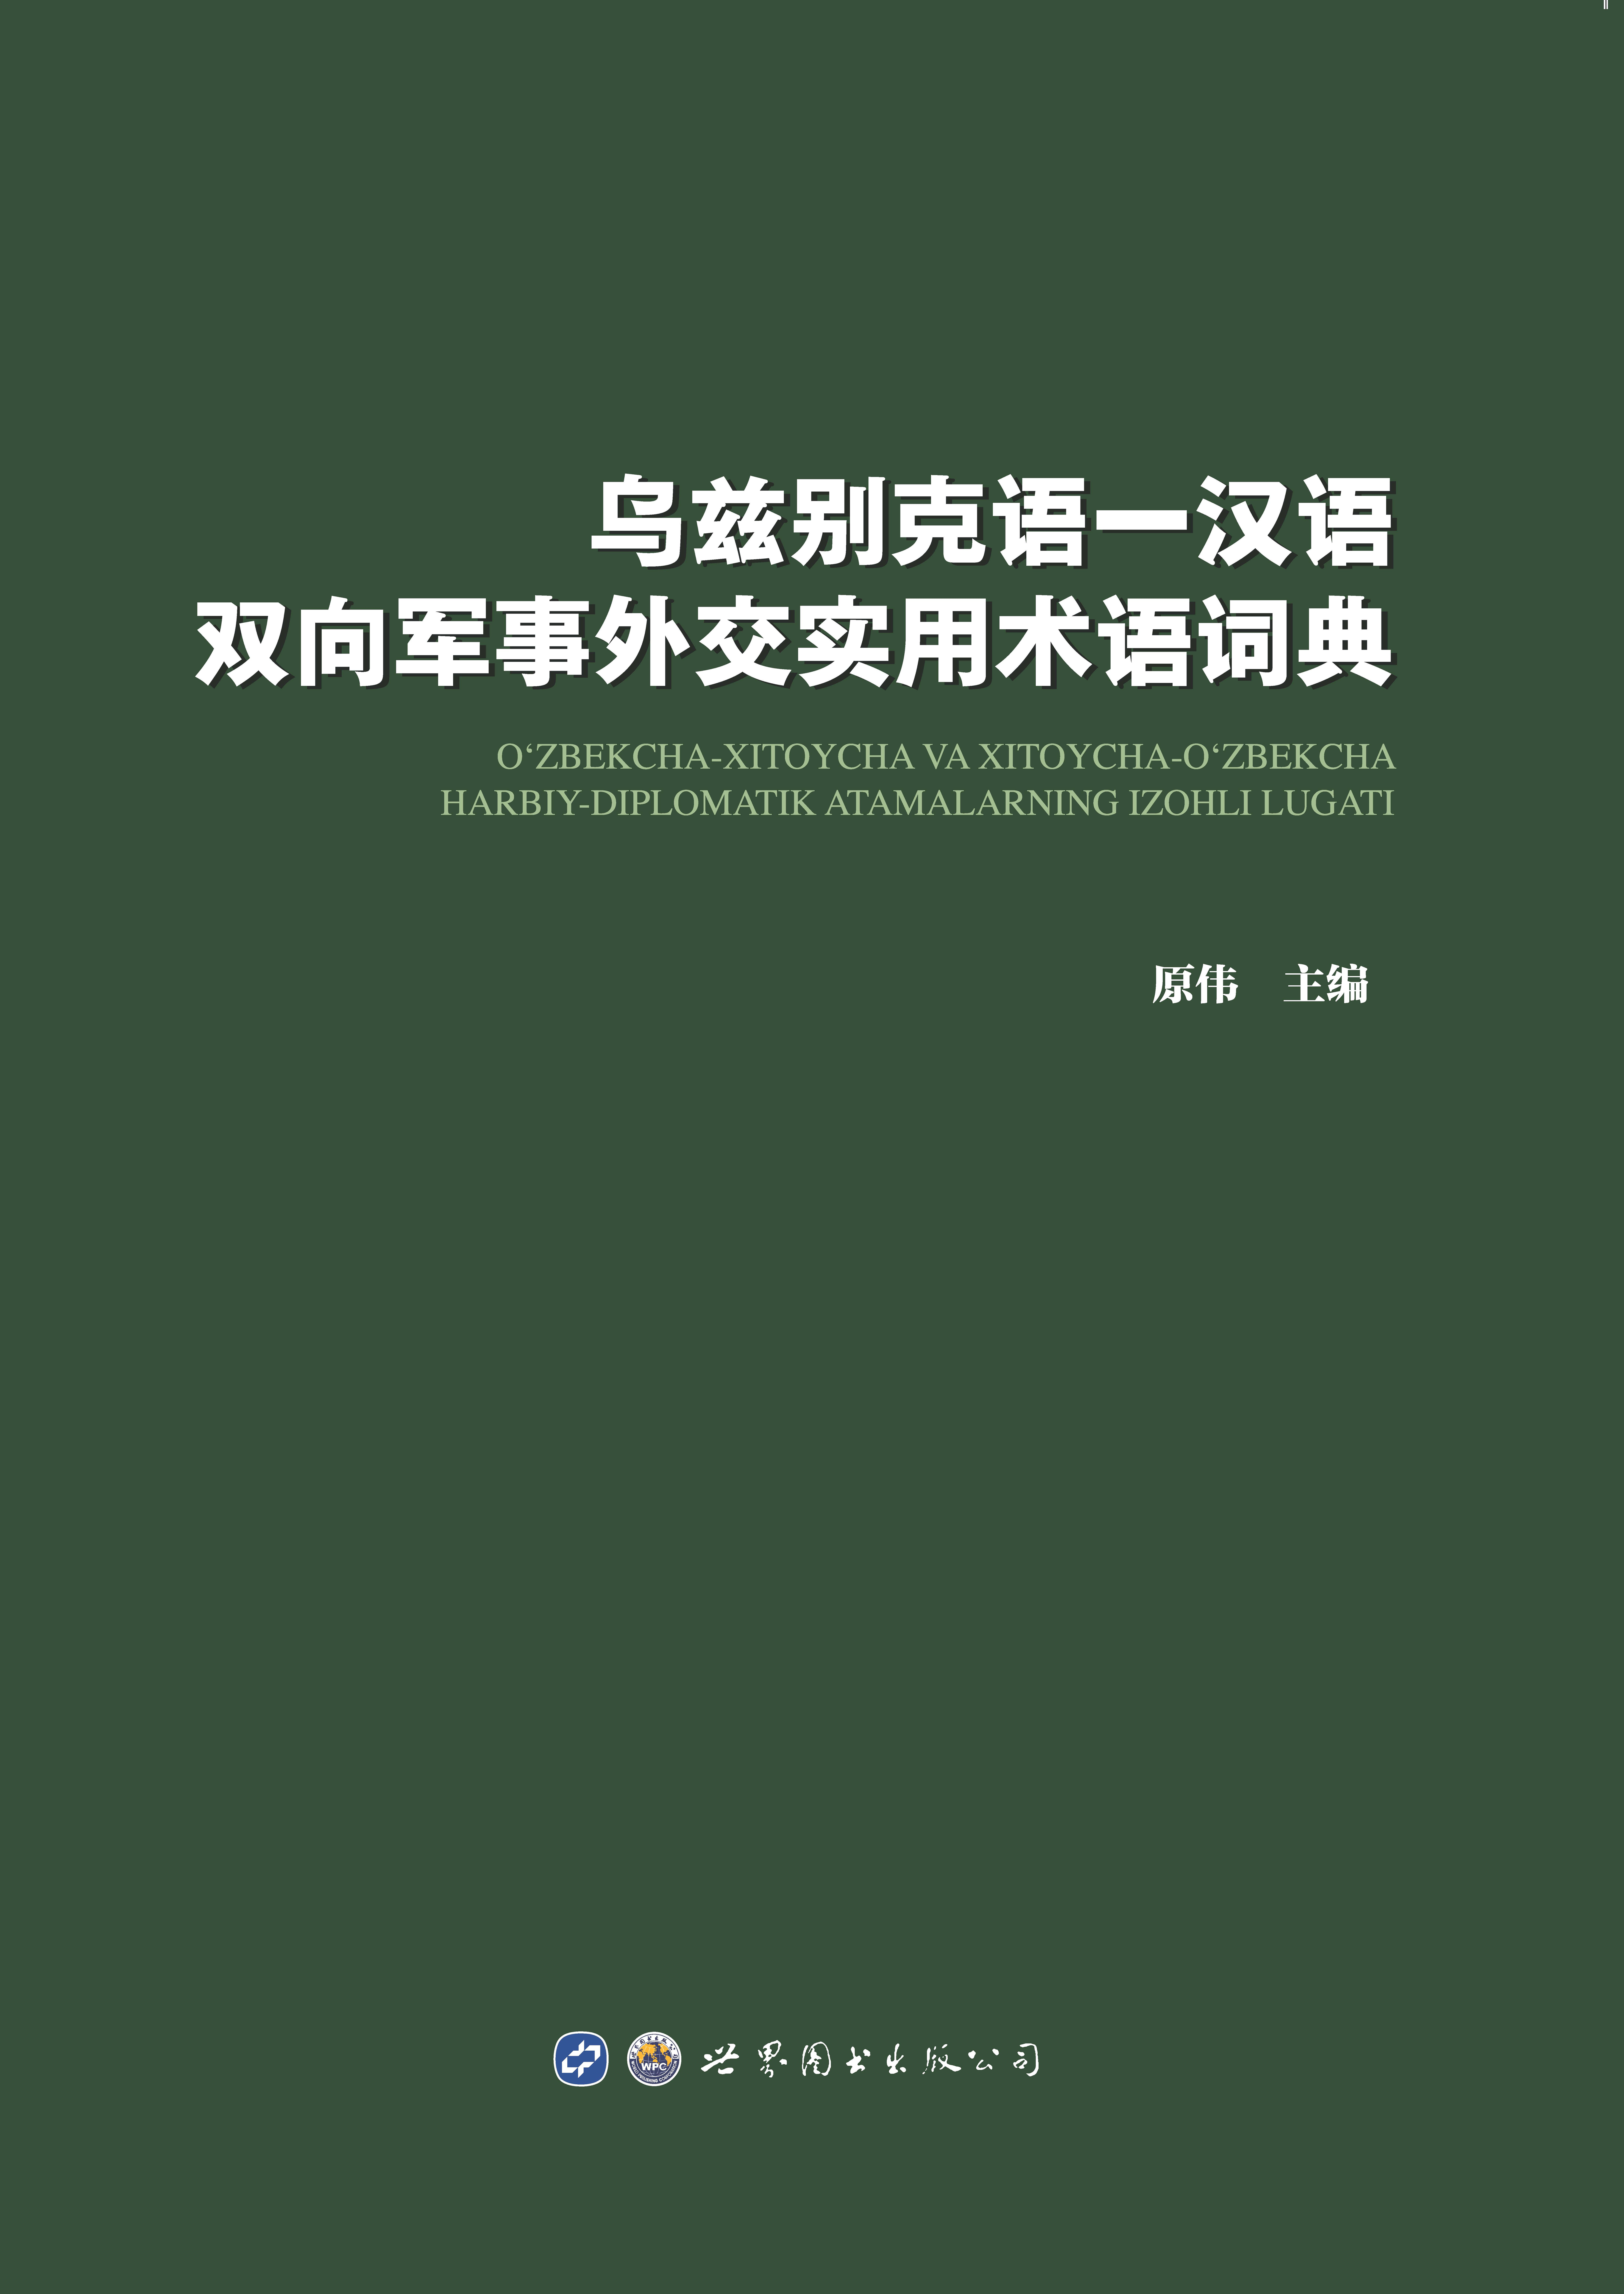 乌兹别克语—汉语双向军事外交实用术语词典